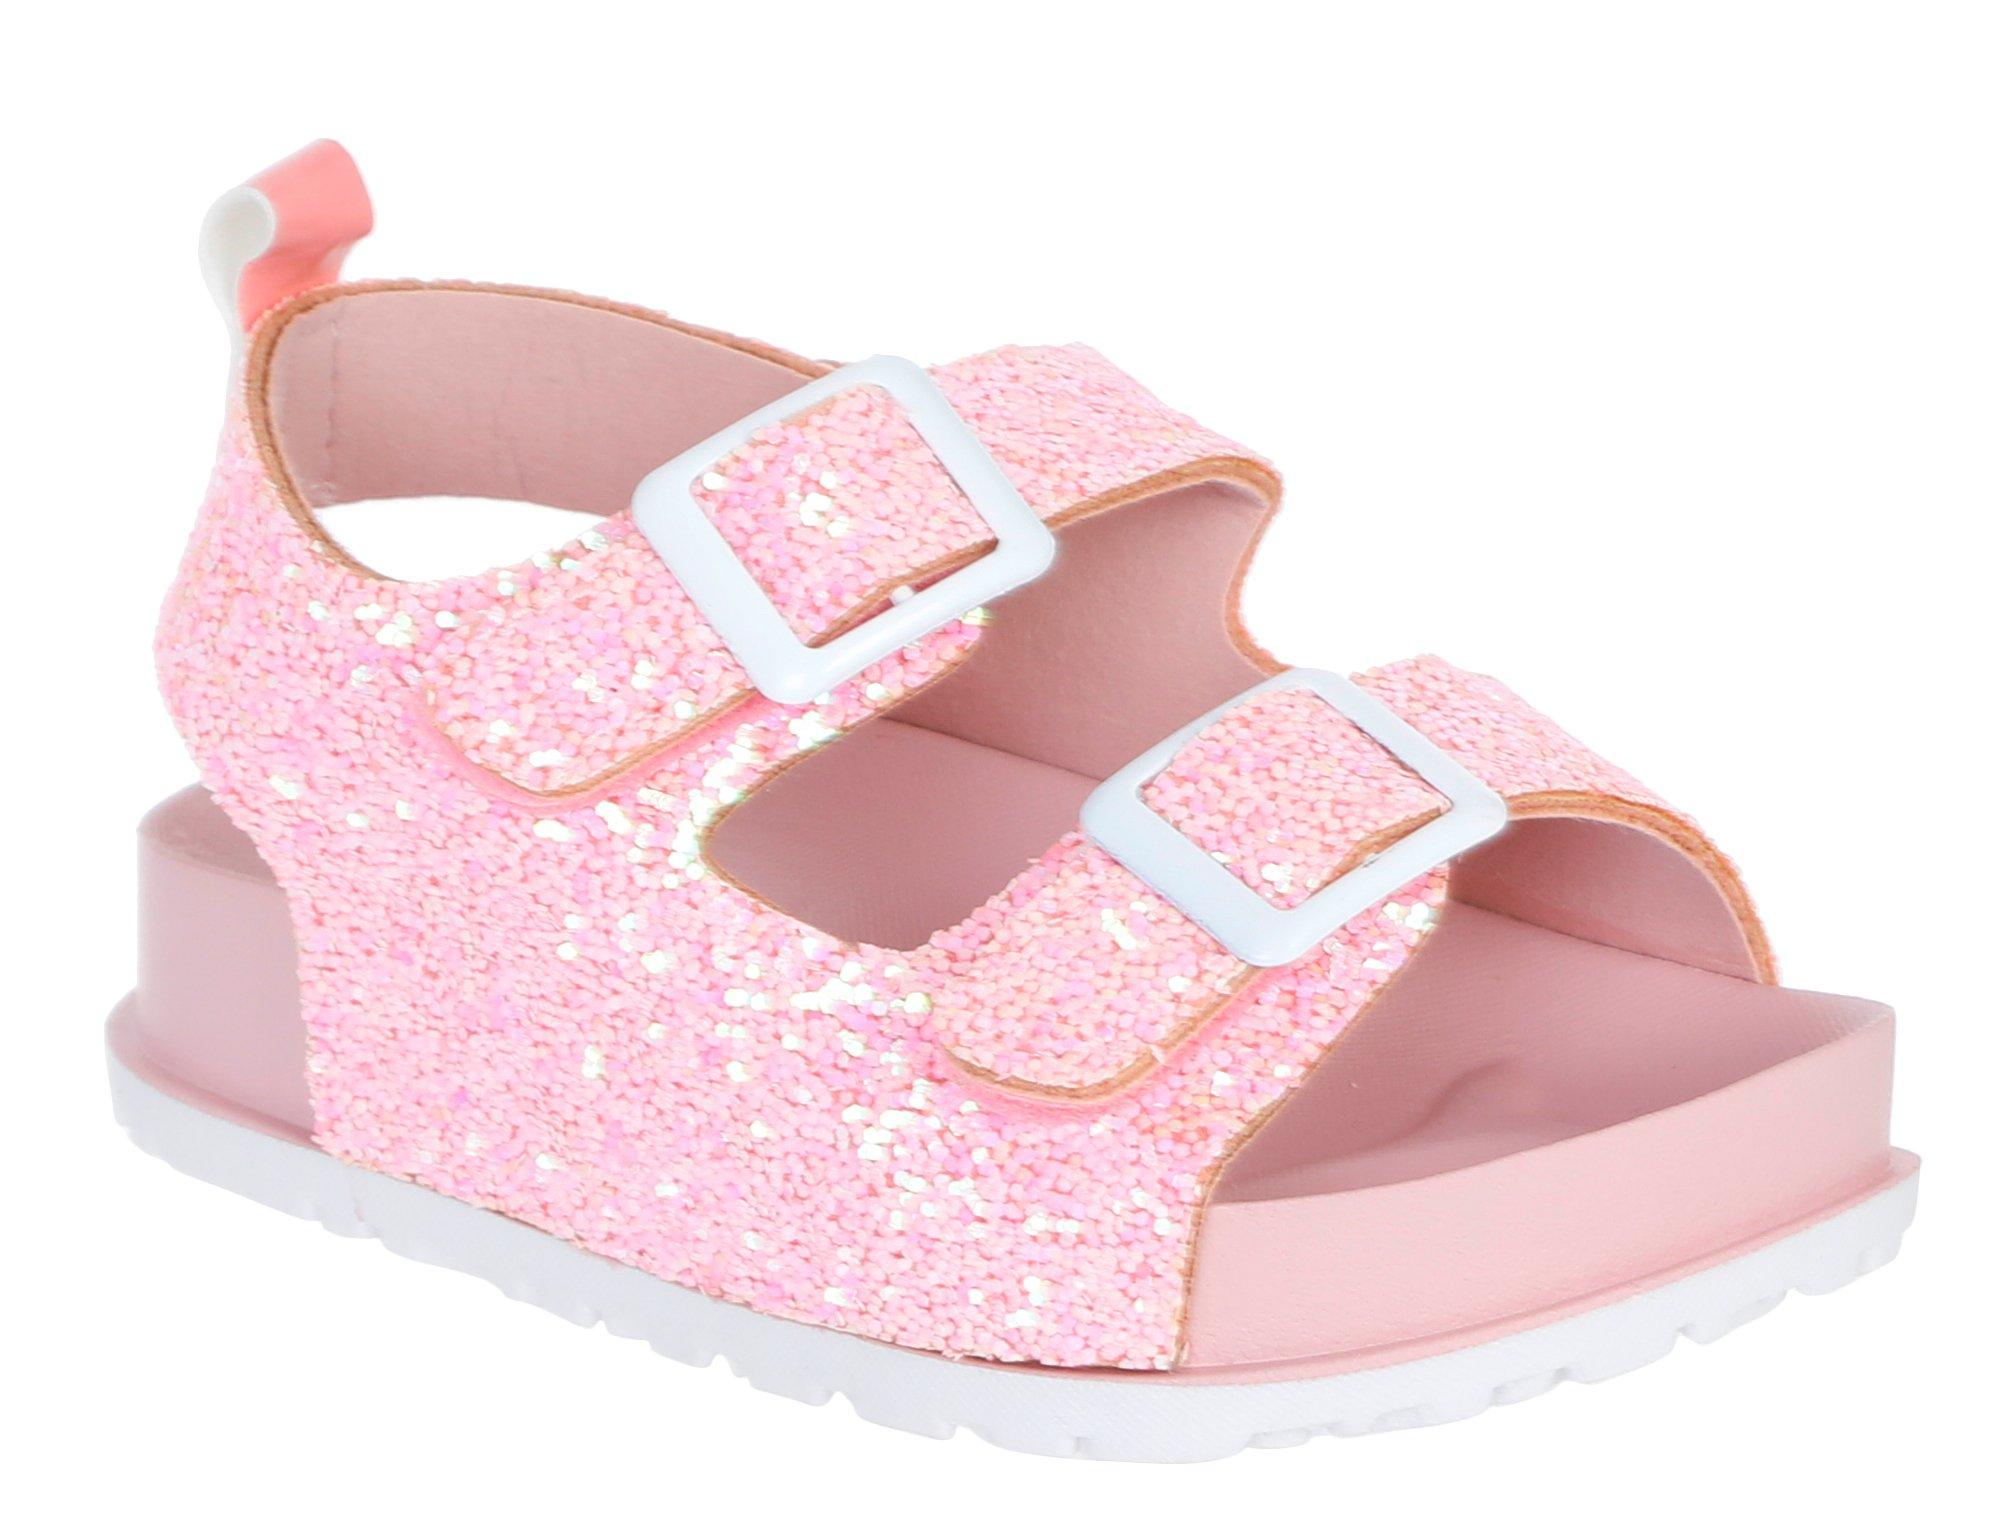 Little Girls Glitter Sandals